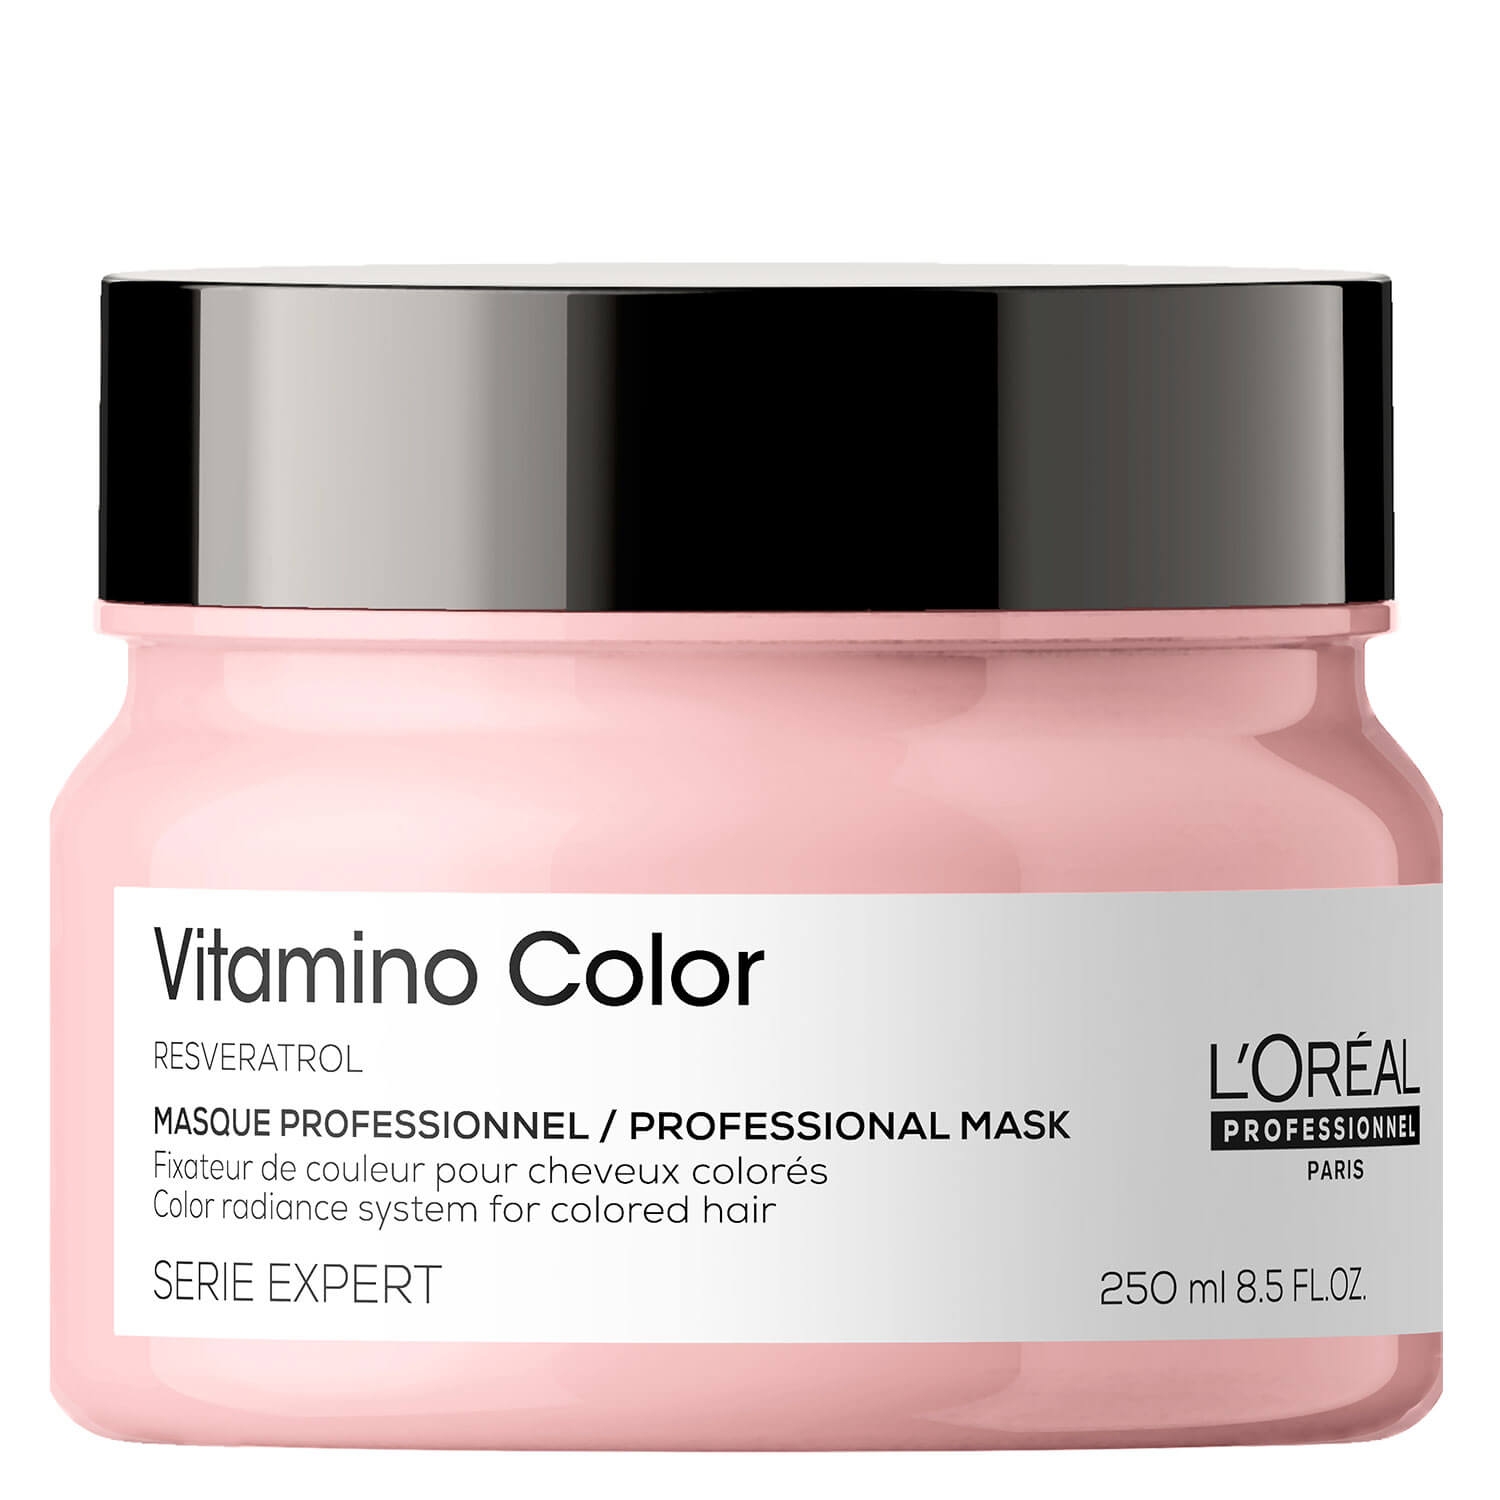 Produktbild von Série Expert Vitamino Color - Professional Masque